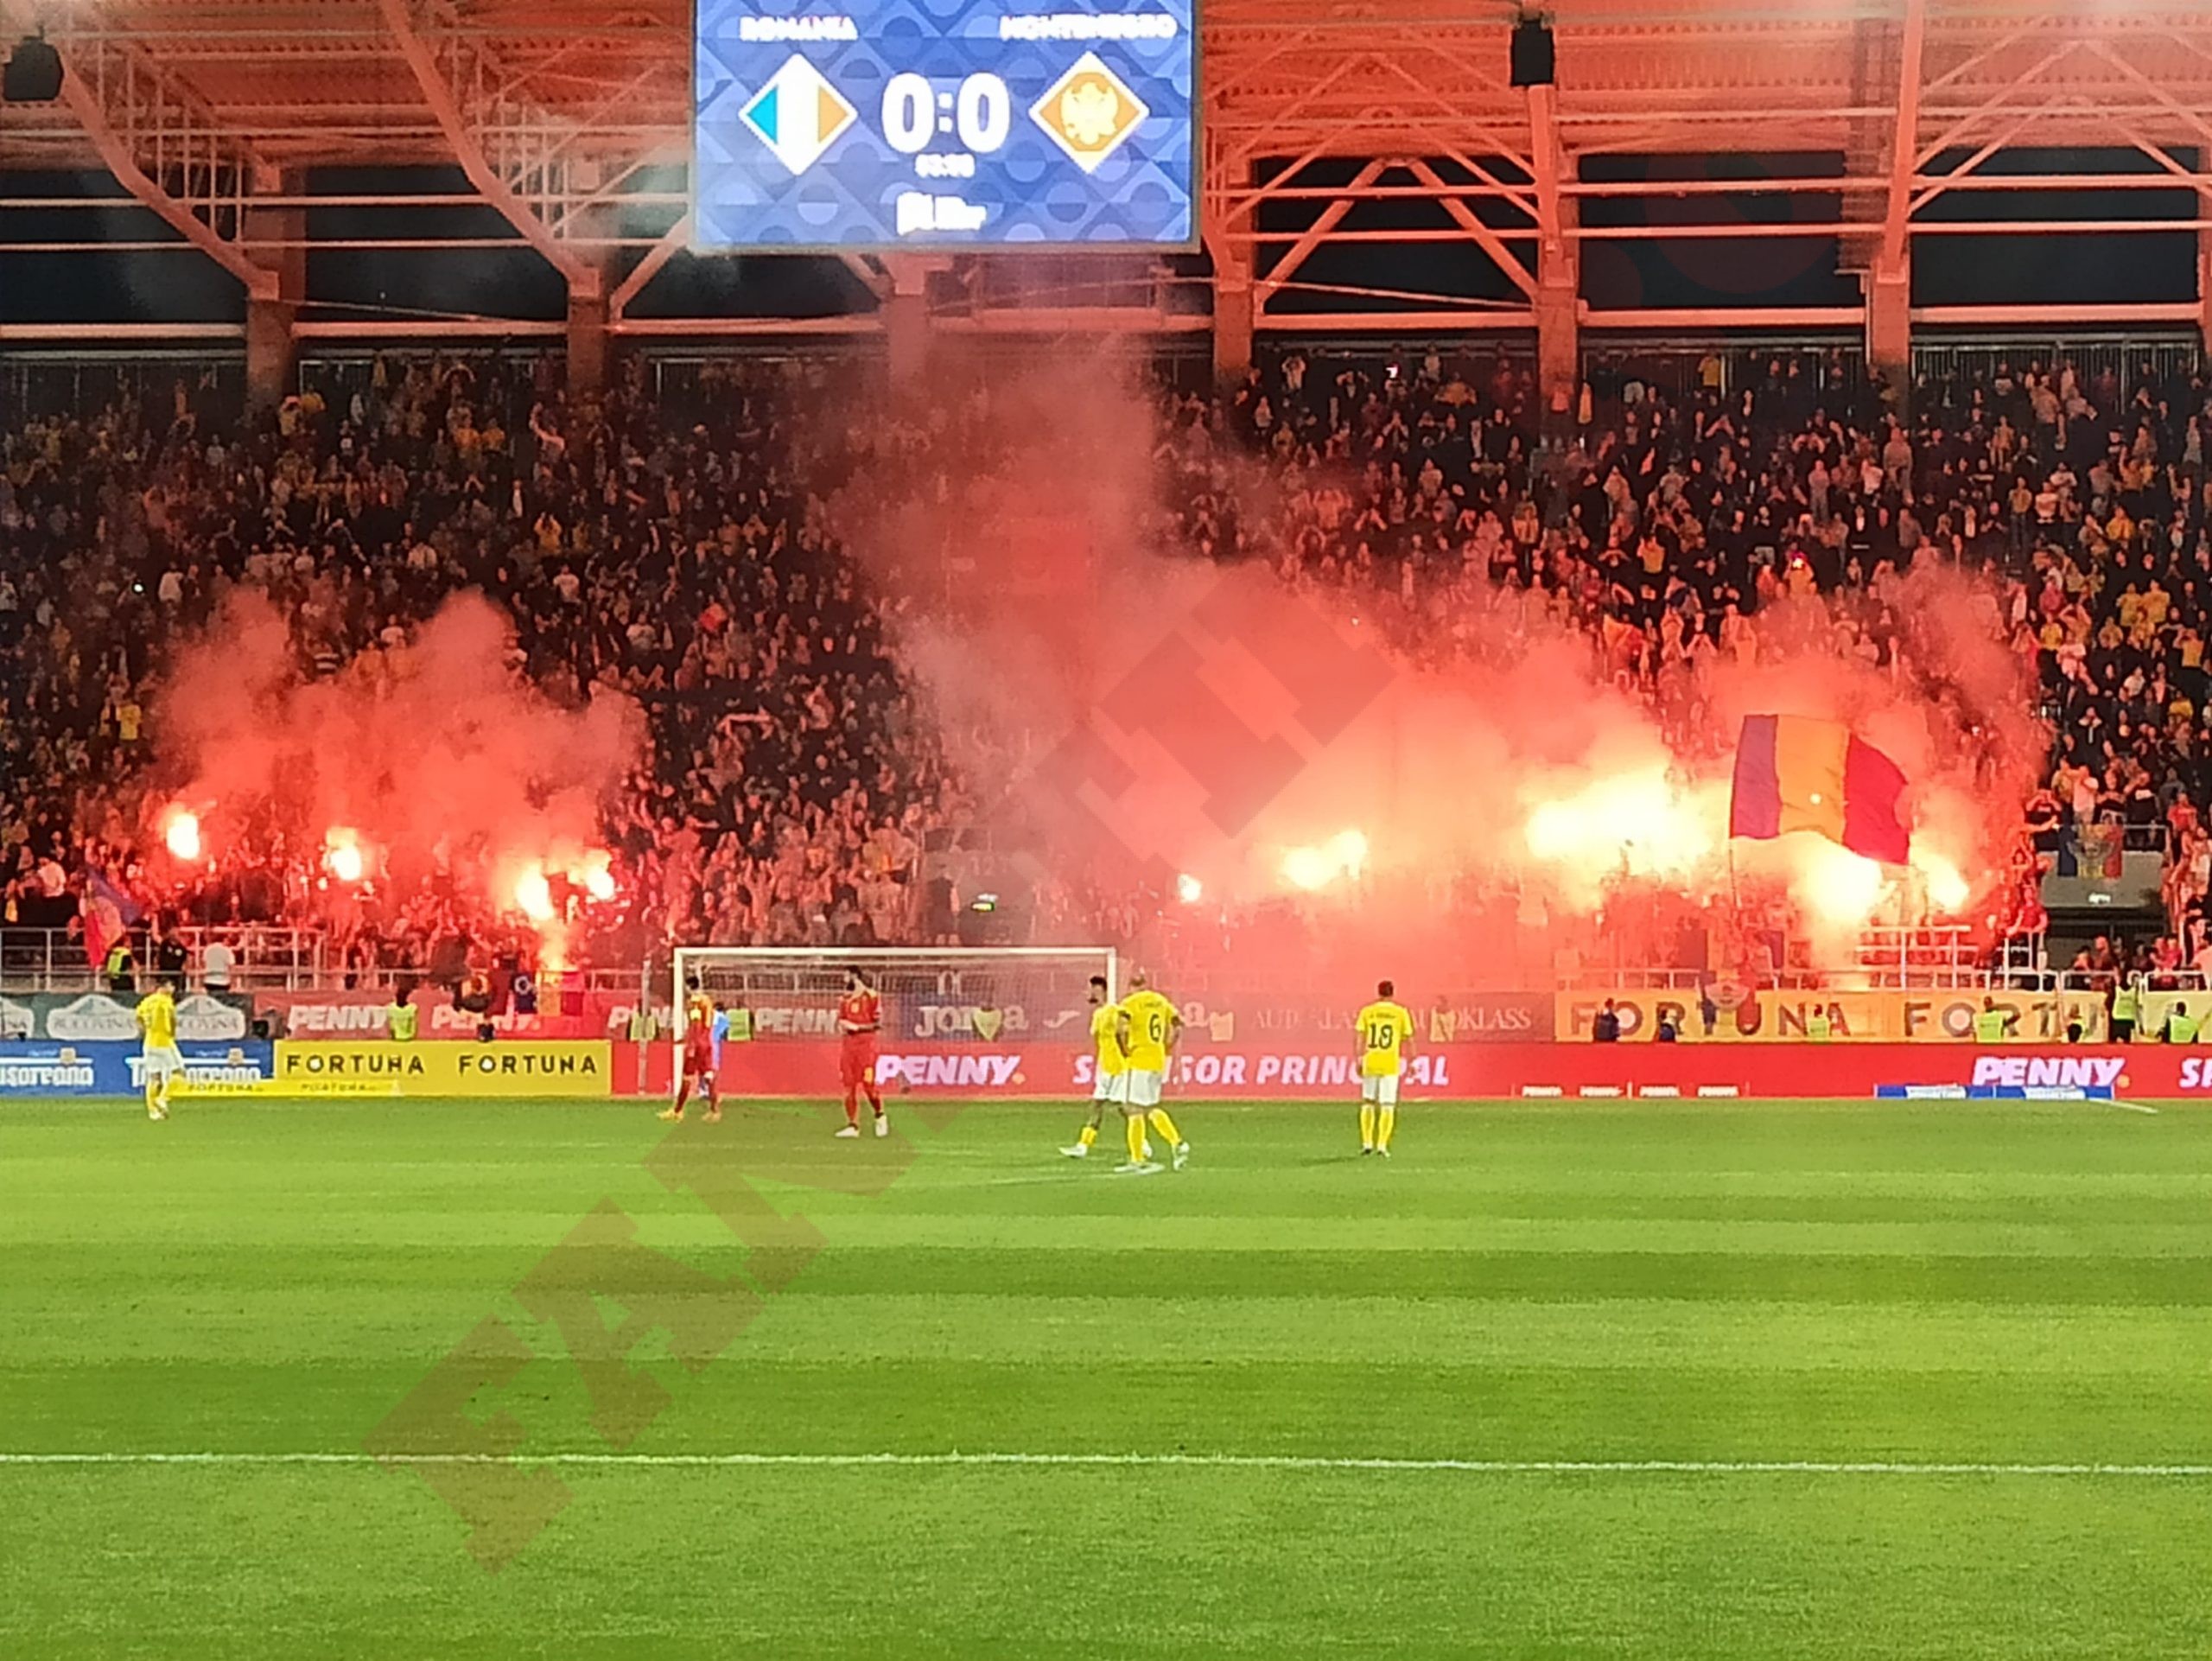 Imagine de la spectacolul pirotehnic de pe stadionul Giulești